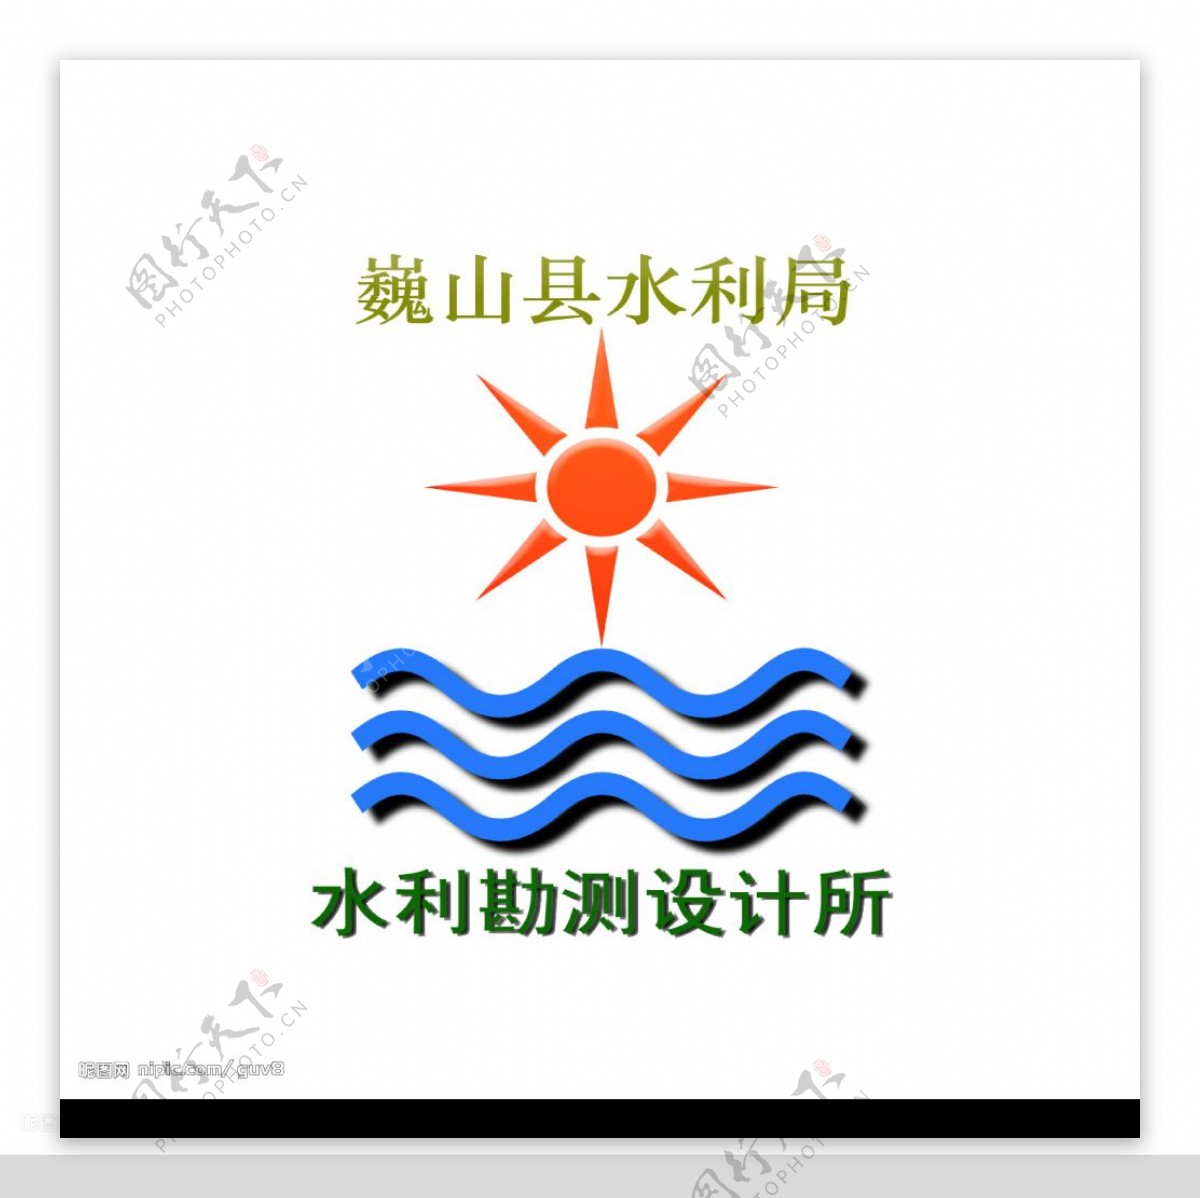 水利单位技术部门徽标LOGOpsd图片